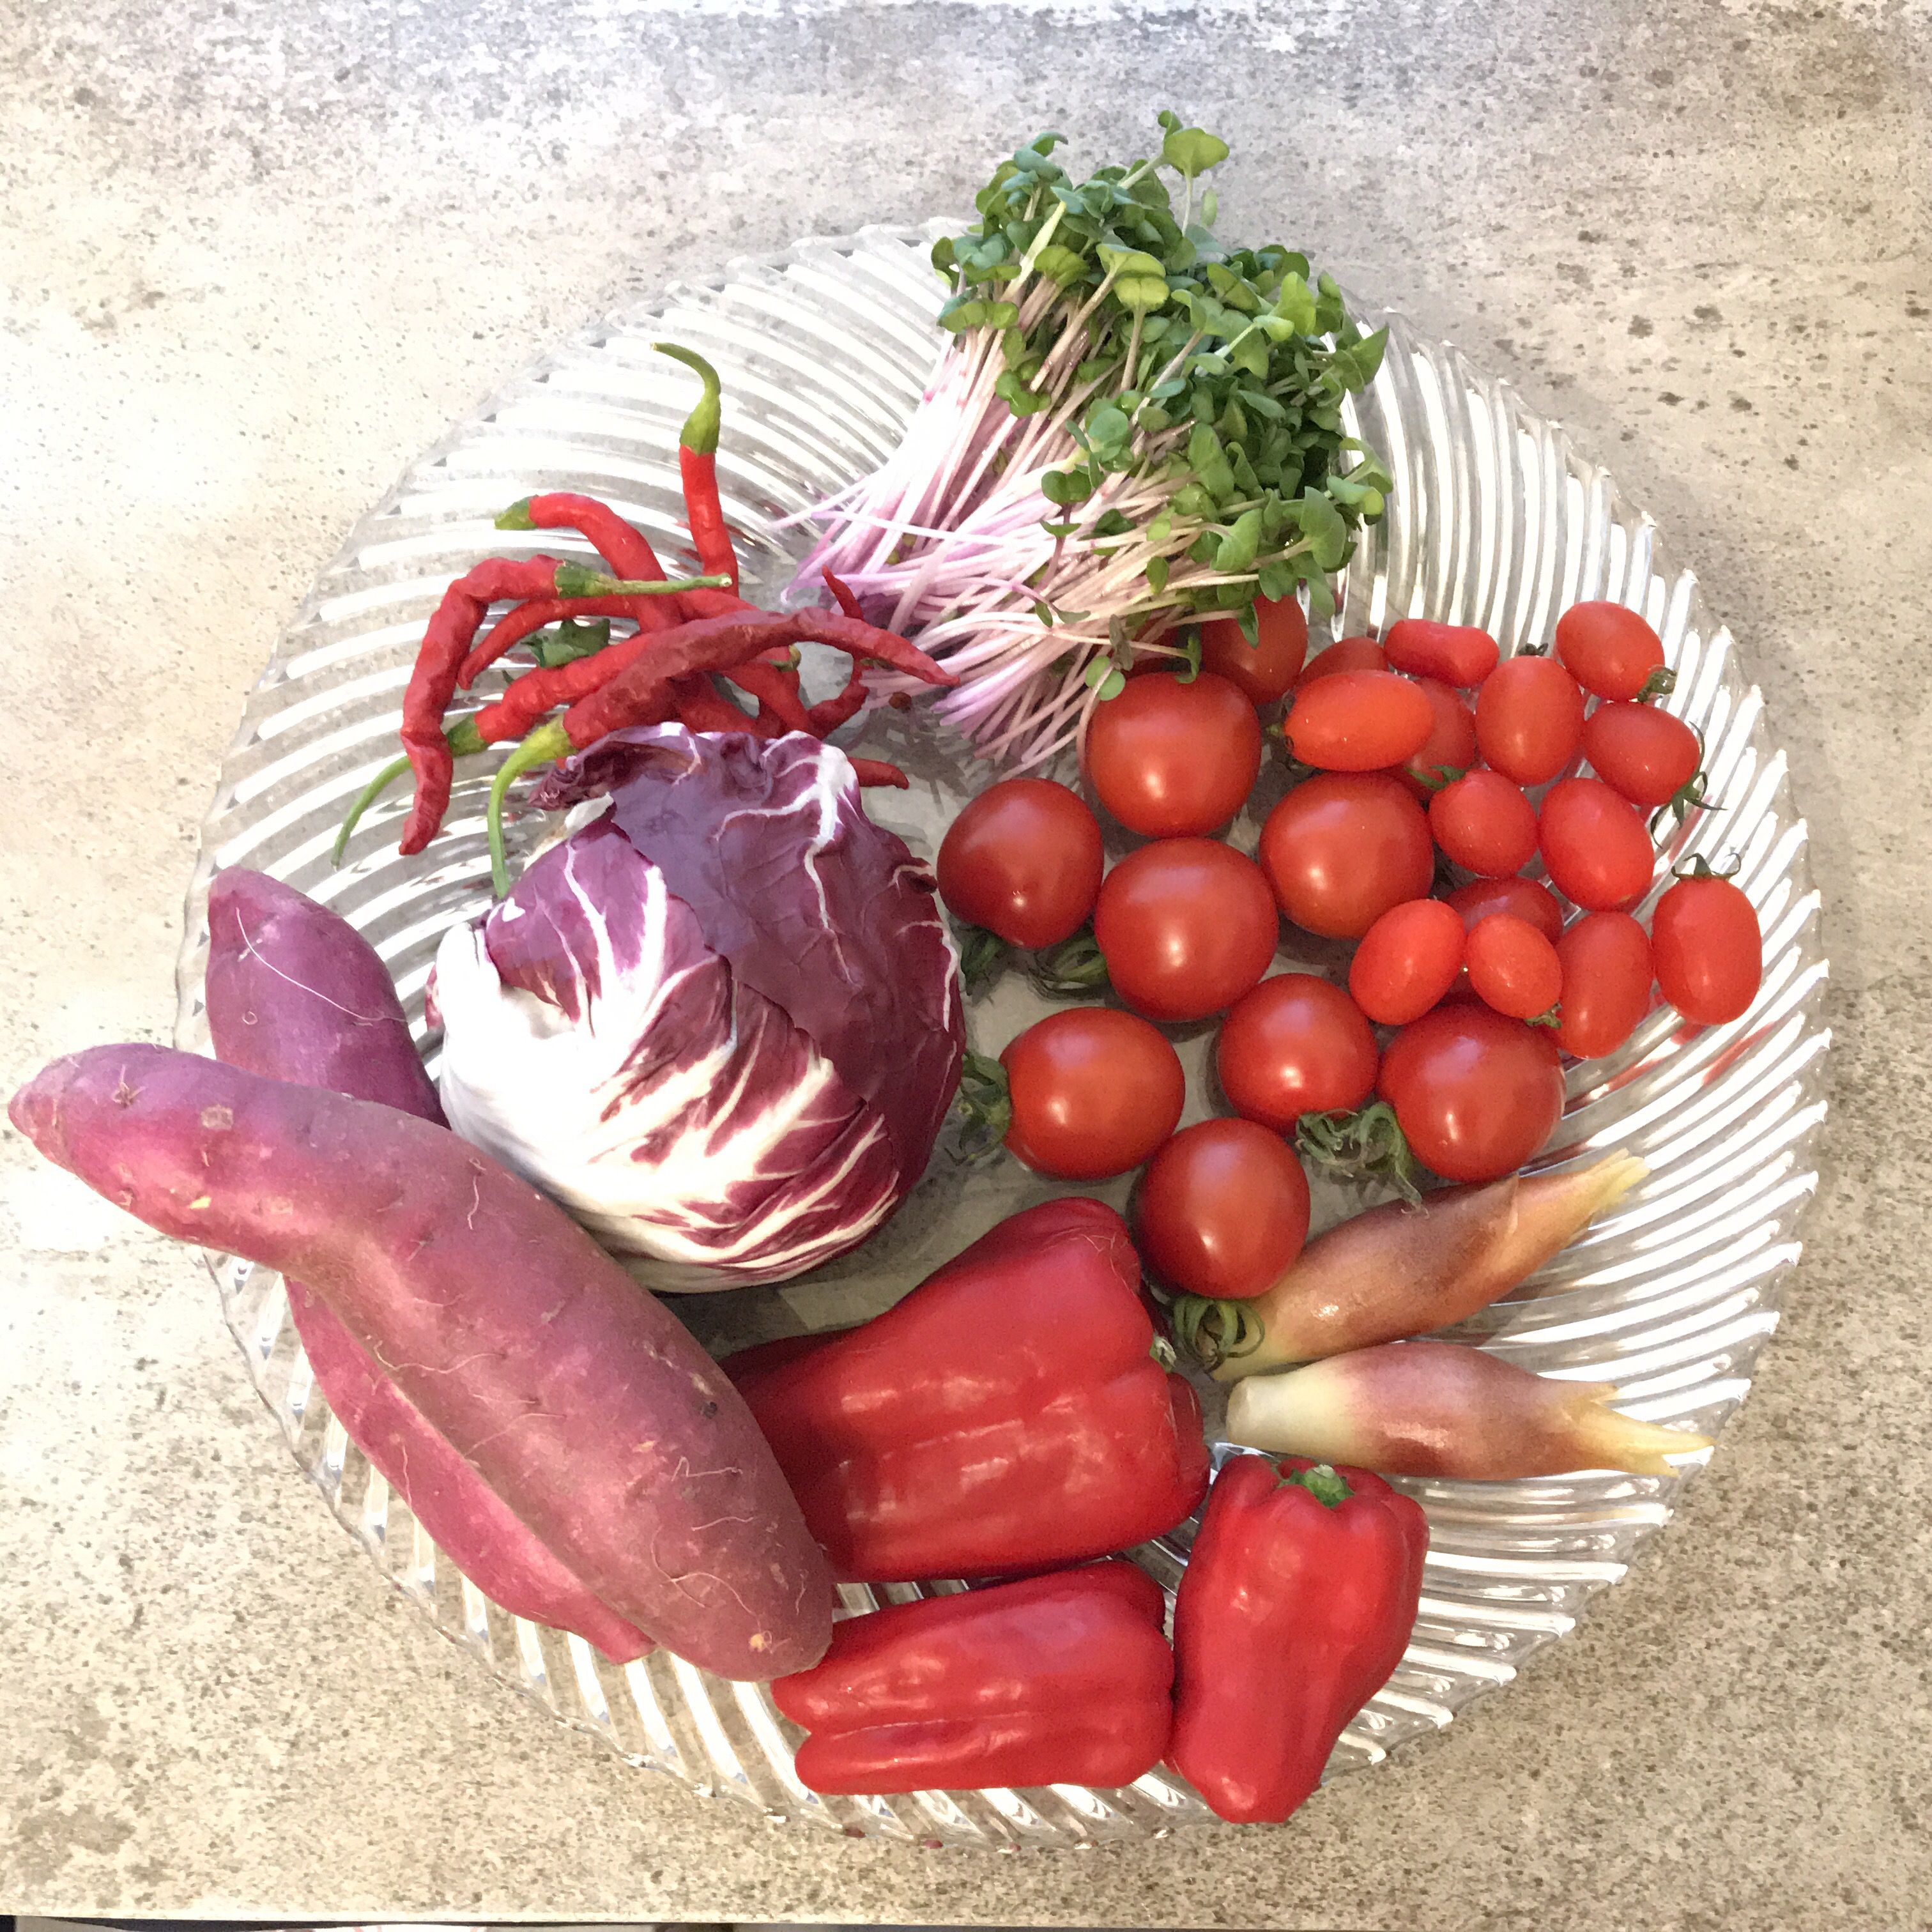 赤いホームパーティー 野菜の色素を使って料理しよう フードメッセンジャー 田口 舞純 食オタmagazine 食のオタクによる食のオタクのためのマガジン 食オタマガジン